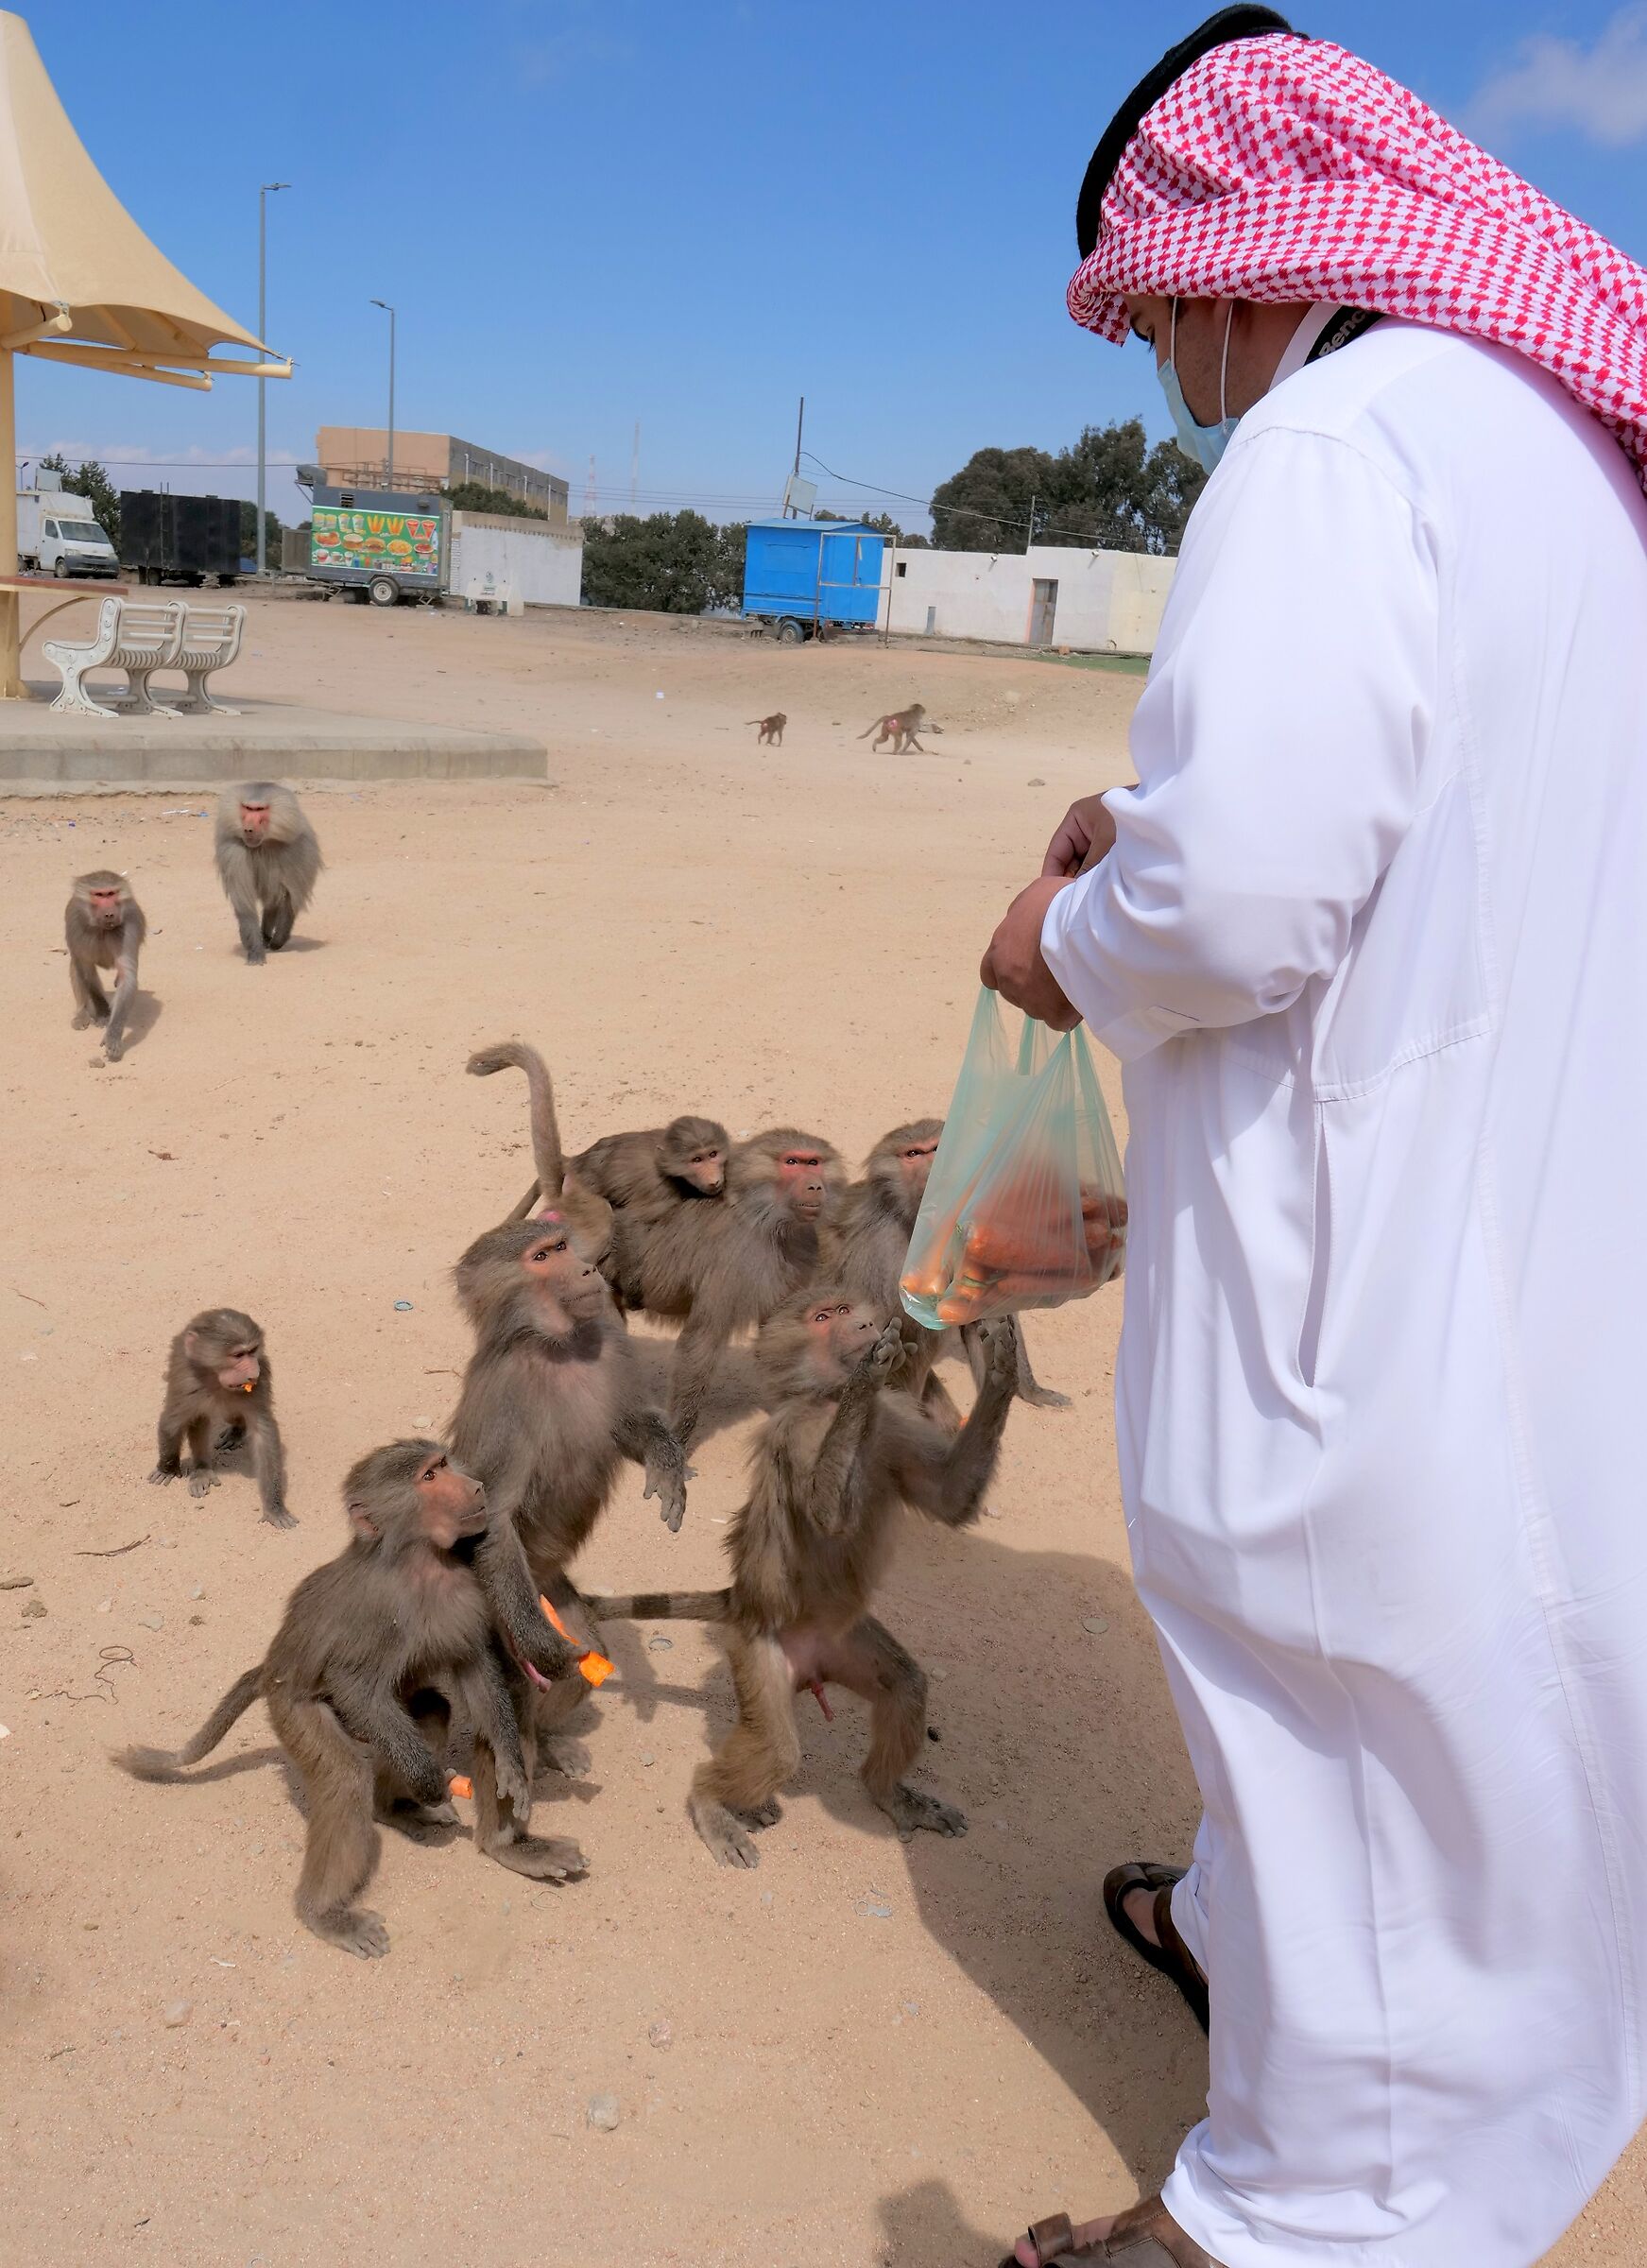 feeding monkey in Saudi Arabia...